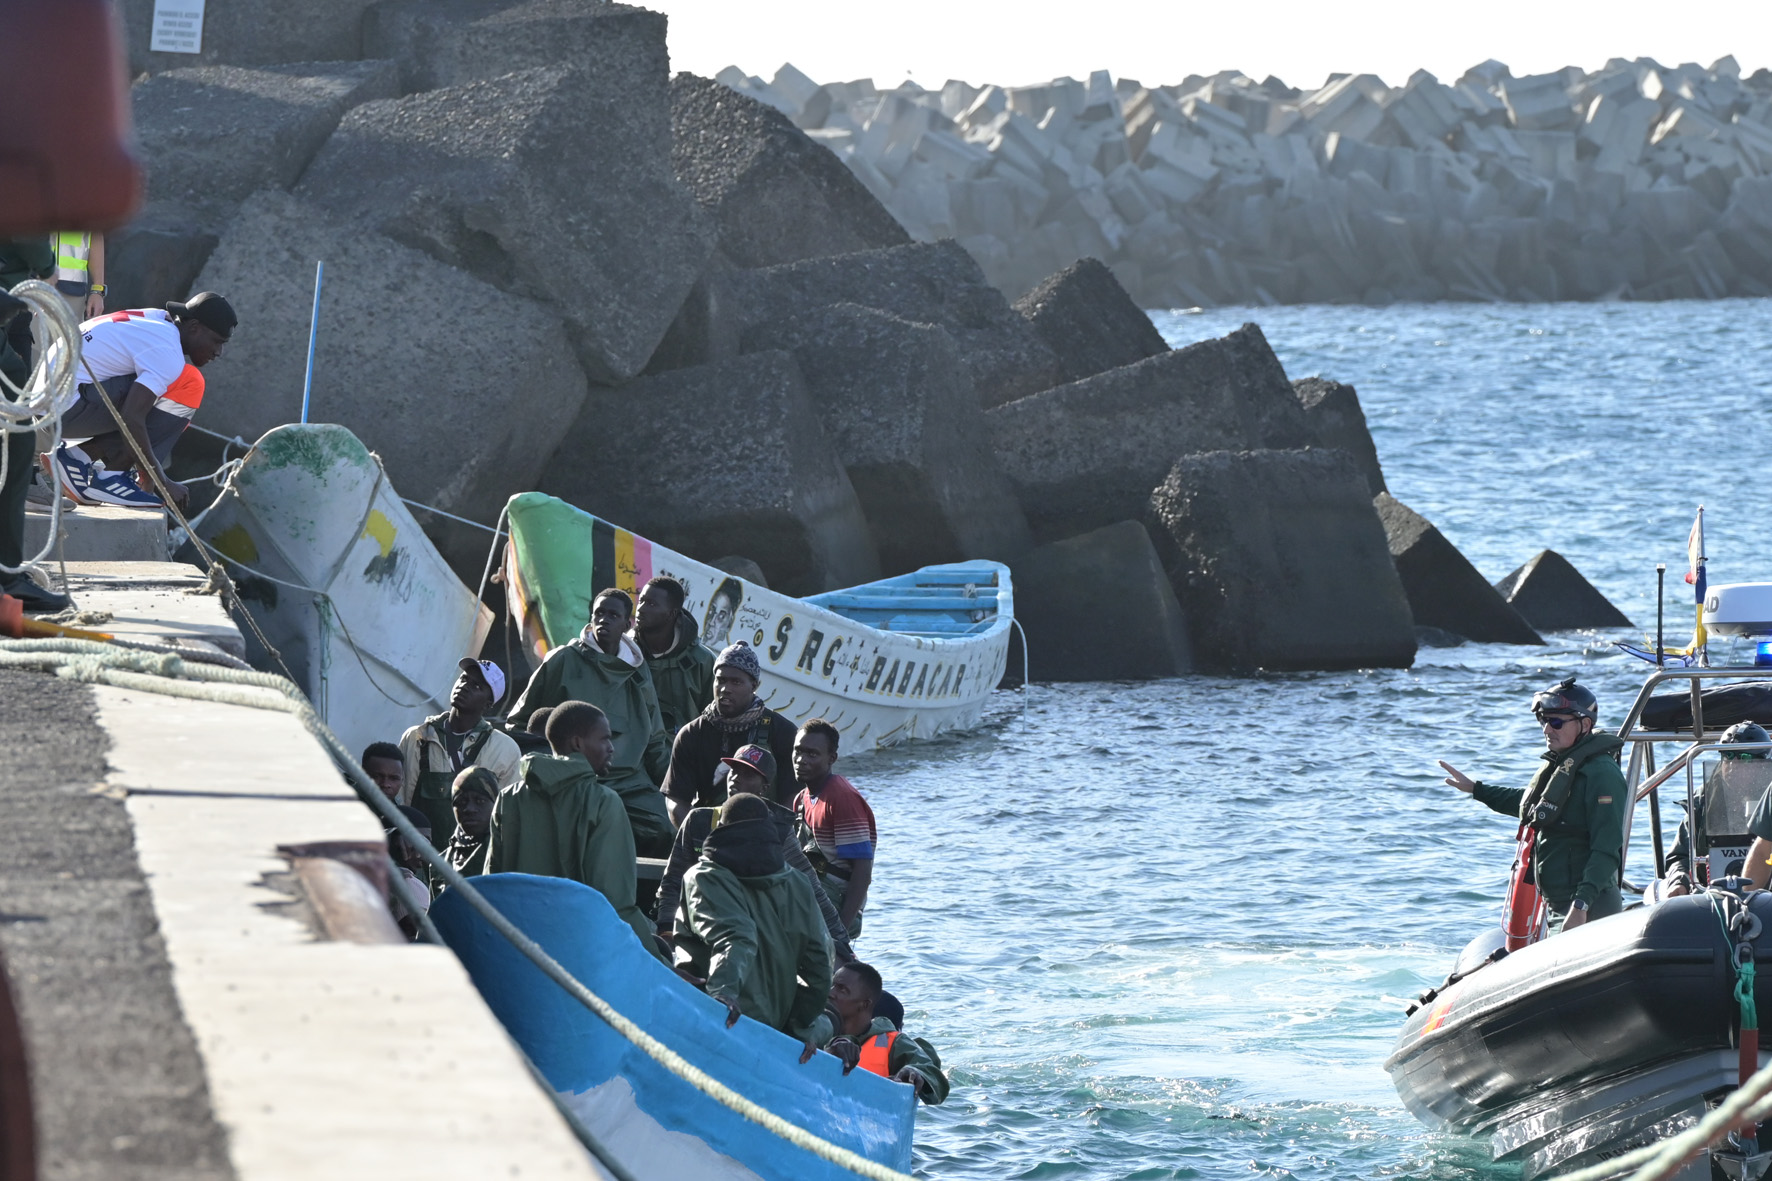 La Guardia Civil rescata 3 cayucos en aguas próximas a El Hierro en la tarde de hoy, con un total de 117 inmigrantes a bordo